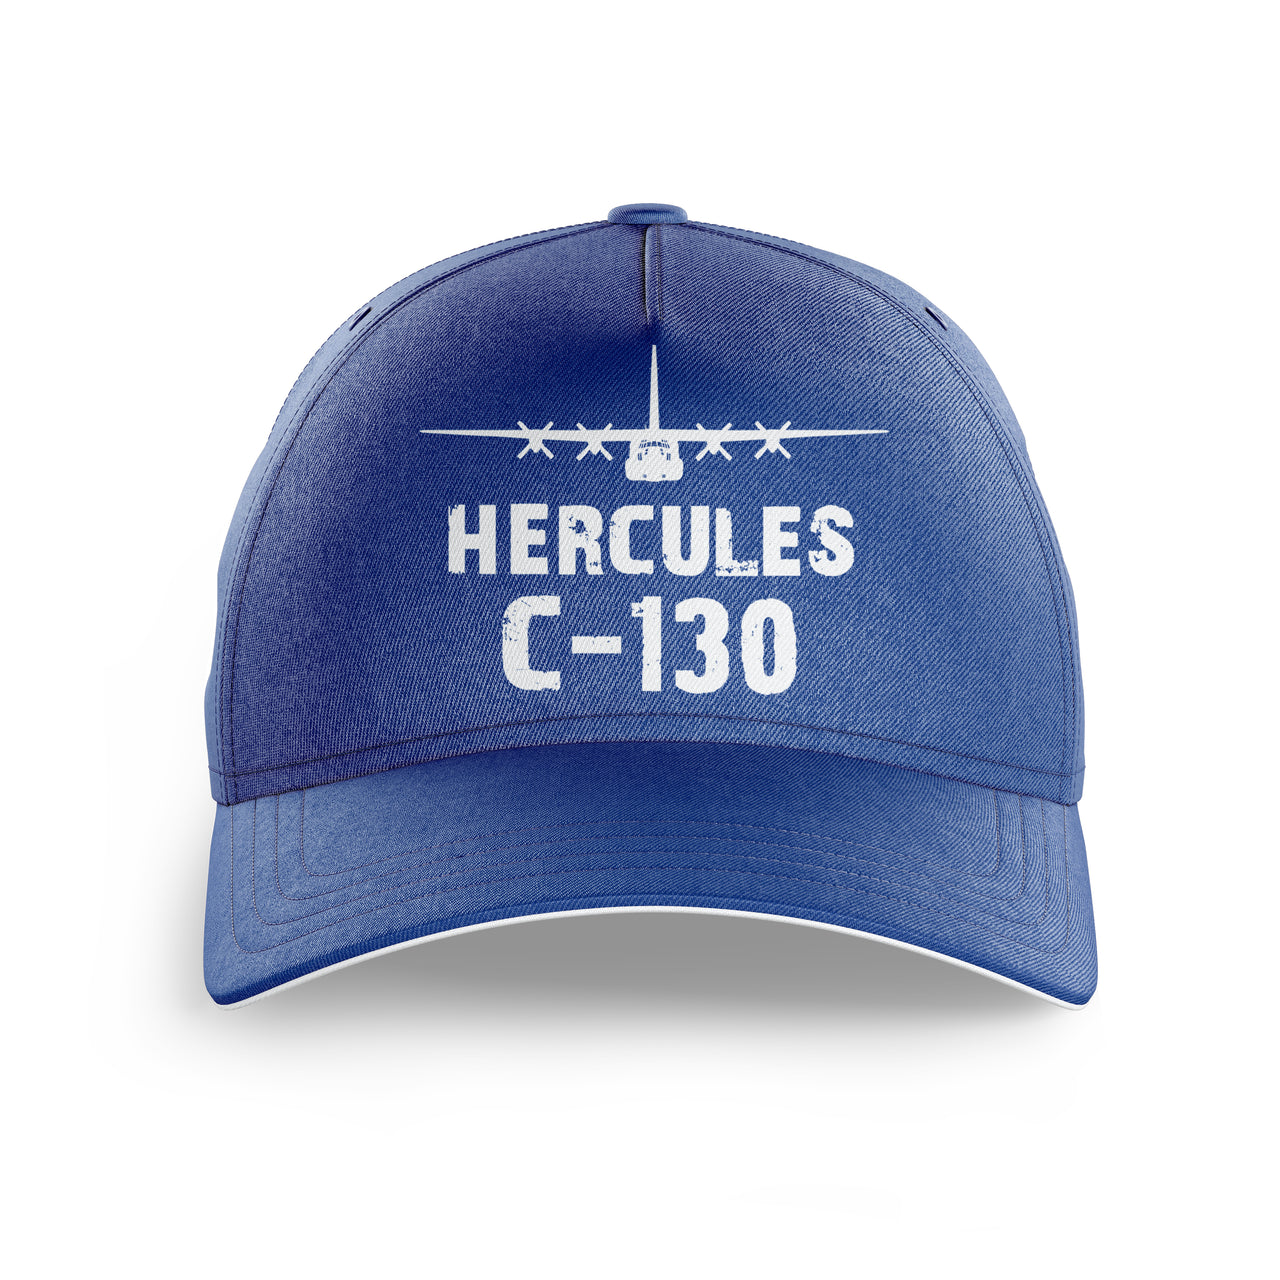 Hercules C-130 & Plane Printed Hats